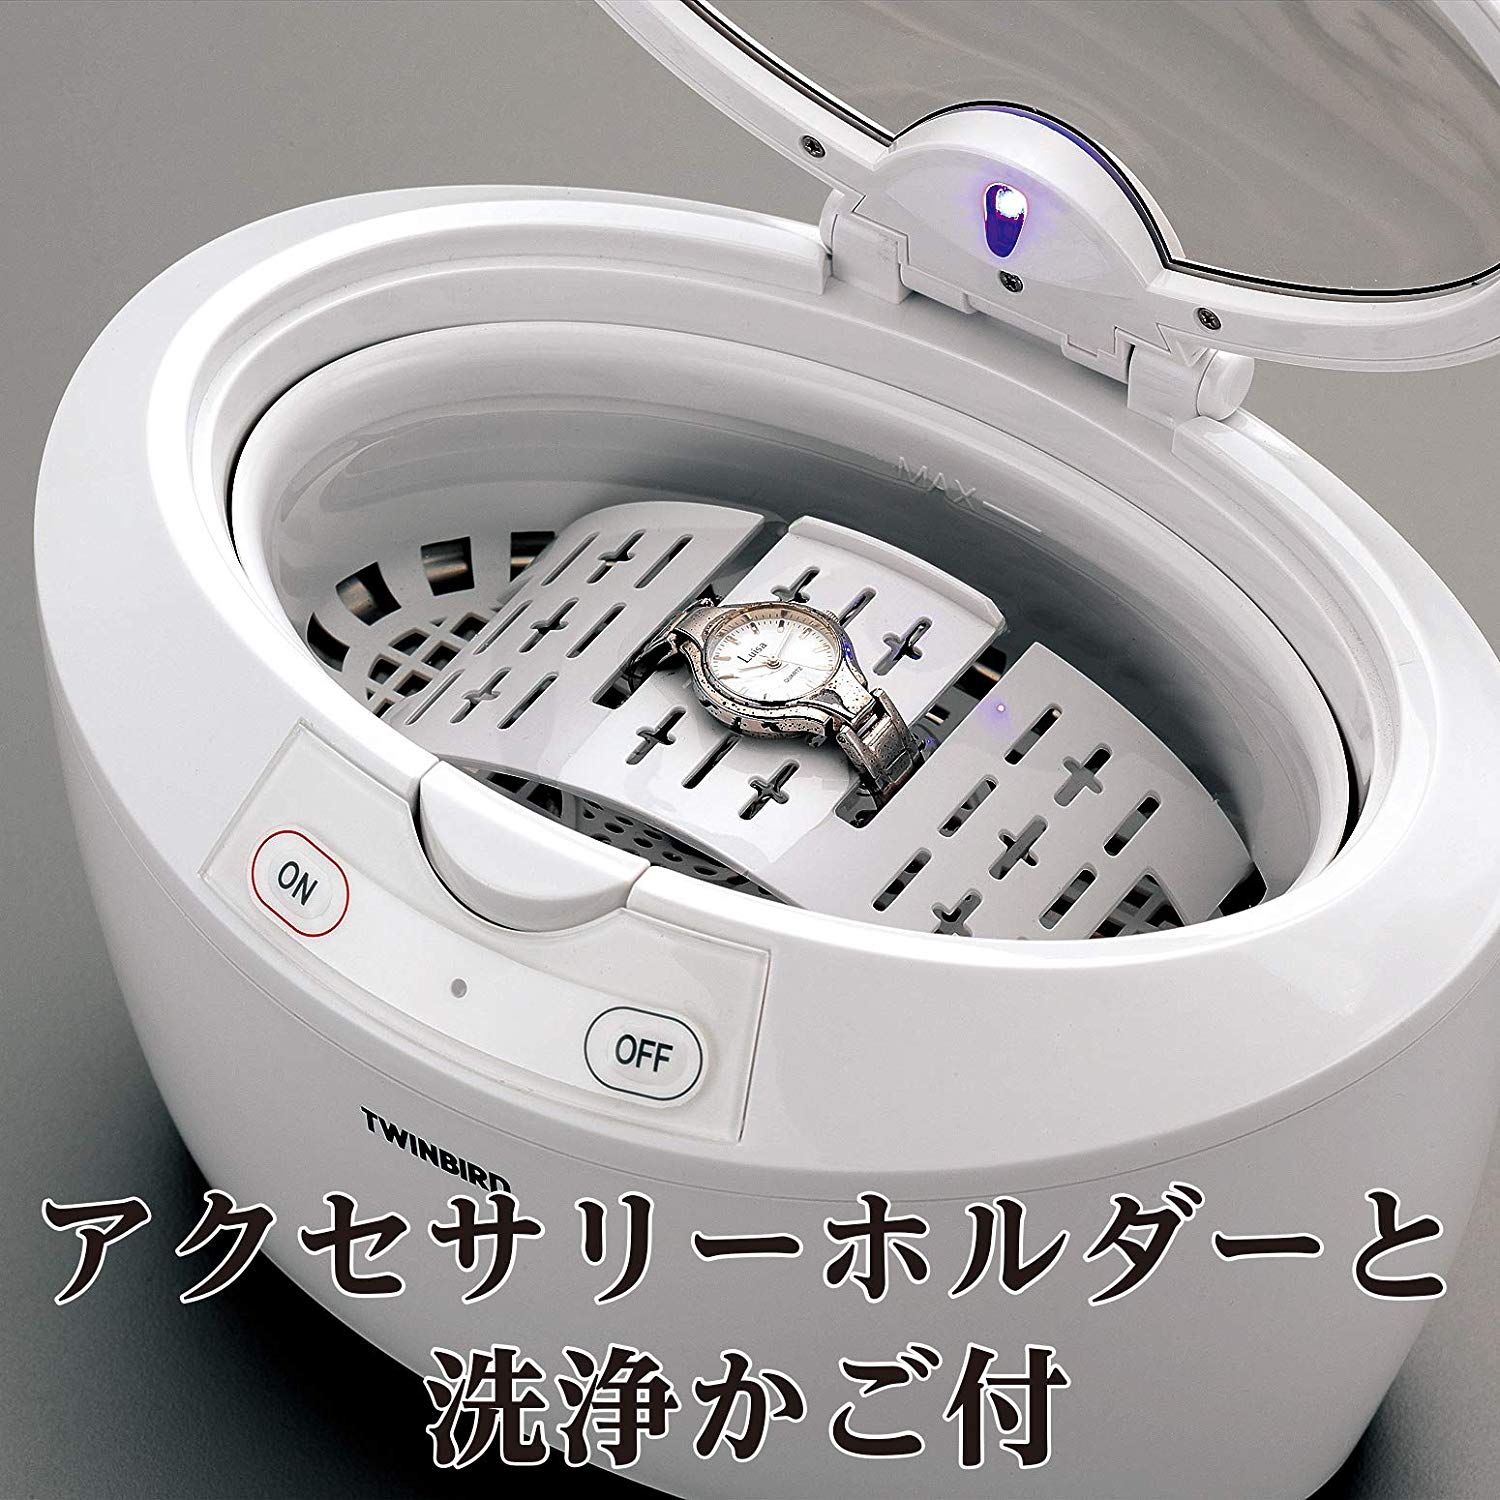 【ツインバード】超音波洗浄器 ホワイト